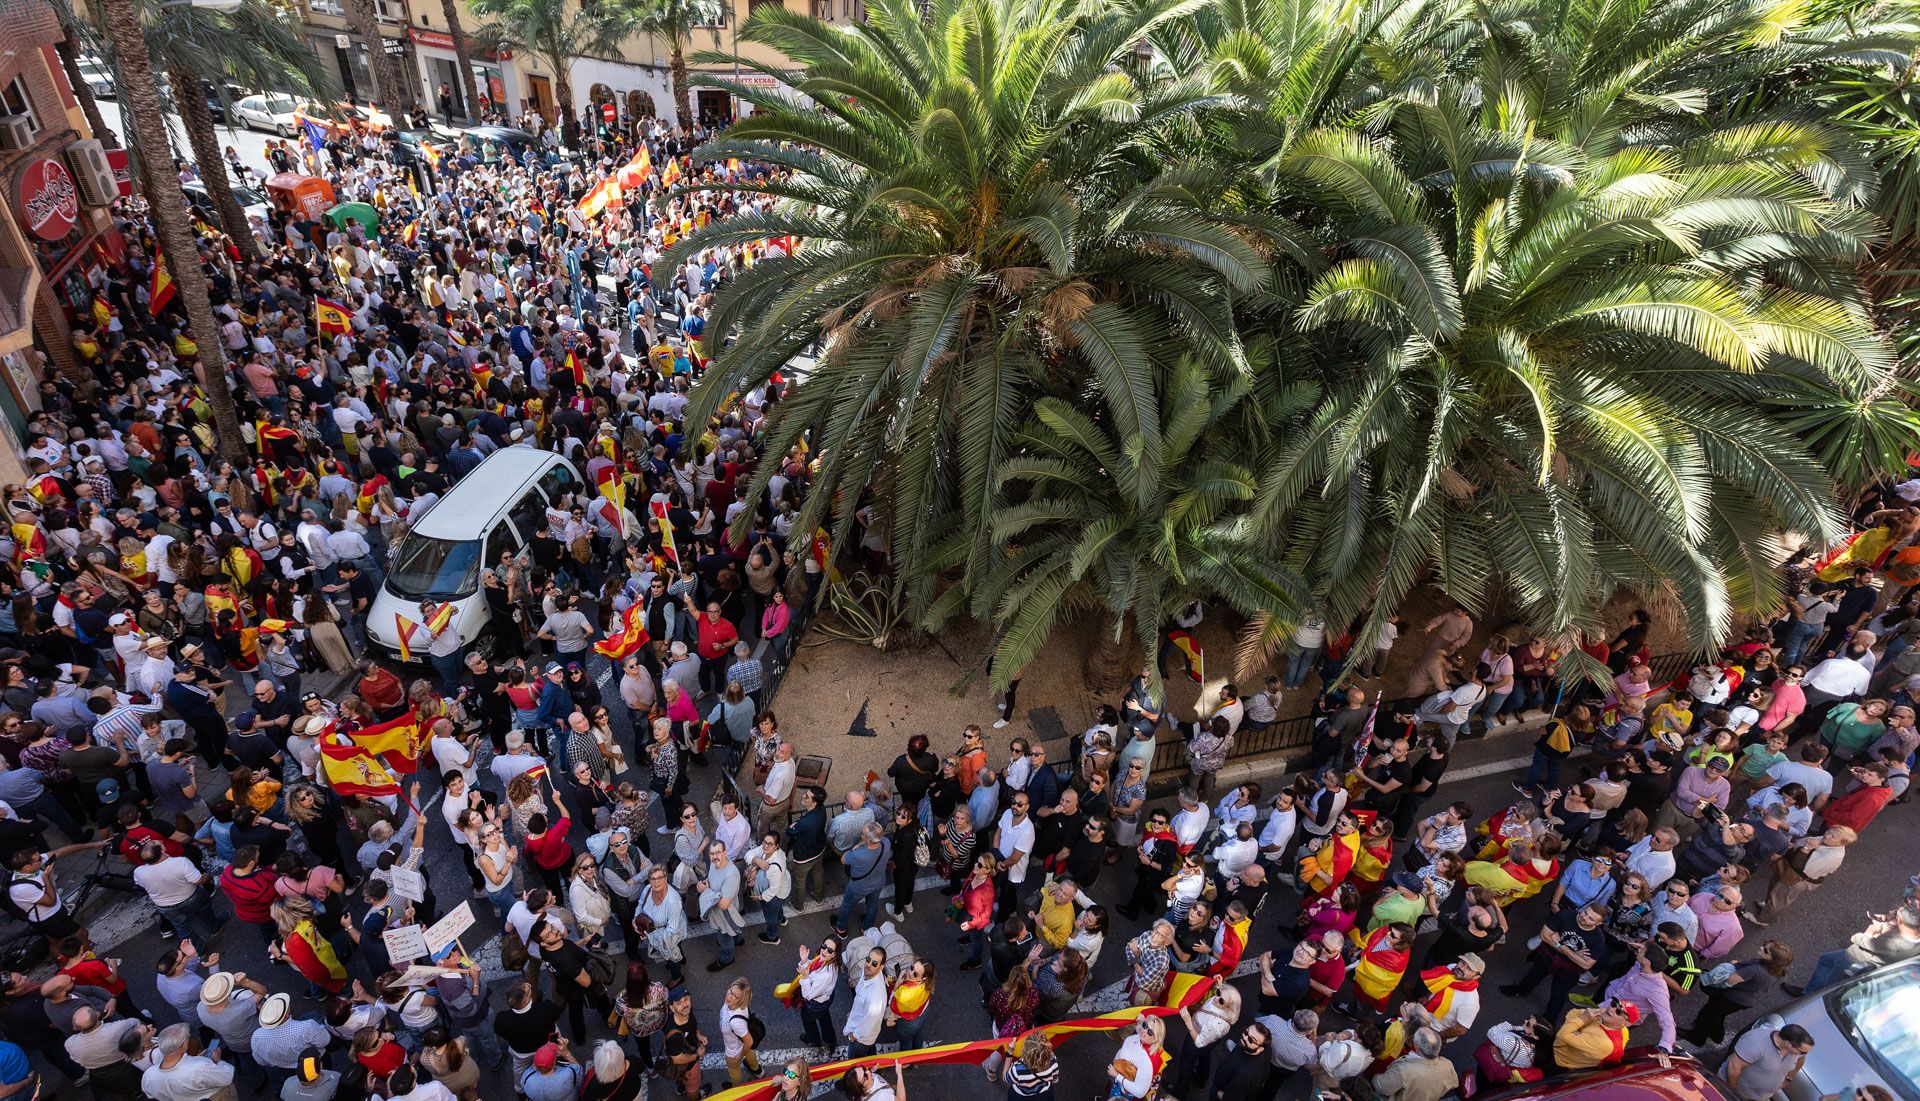 Multitudinaria protesta frente a la sede del PSPV-PSOE en Alicante